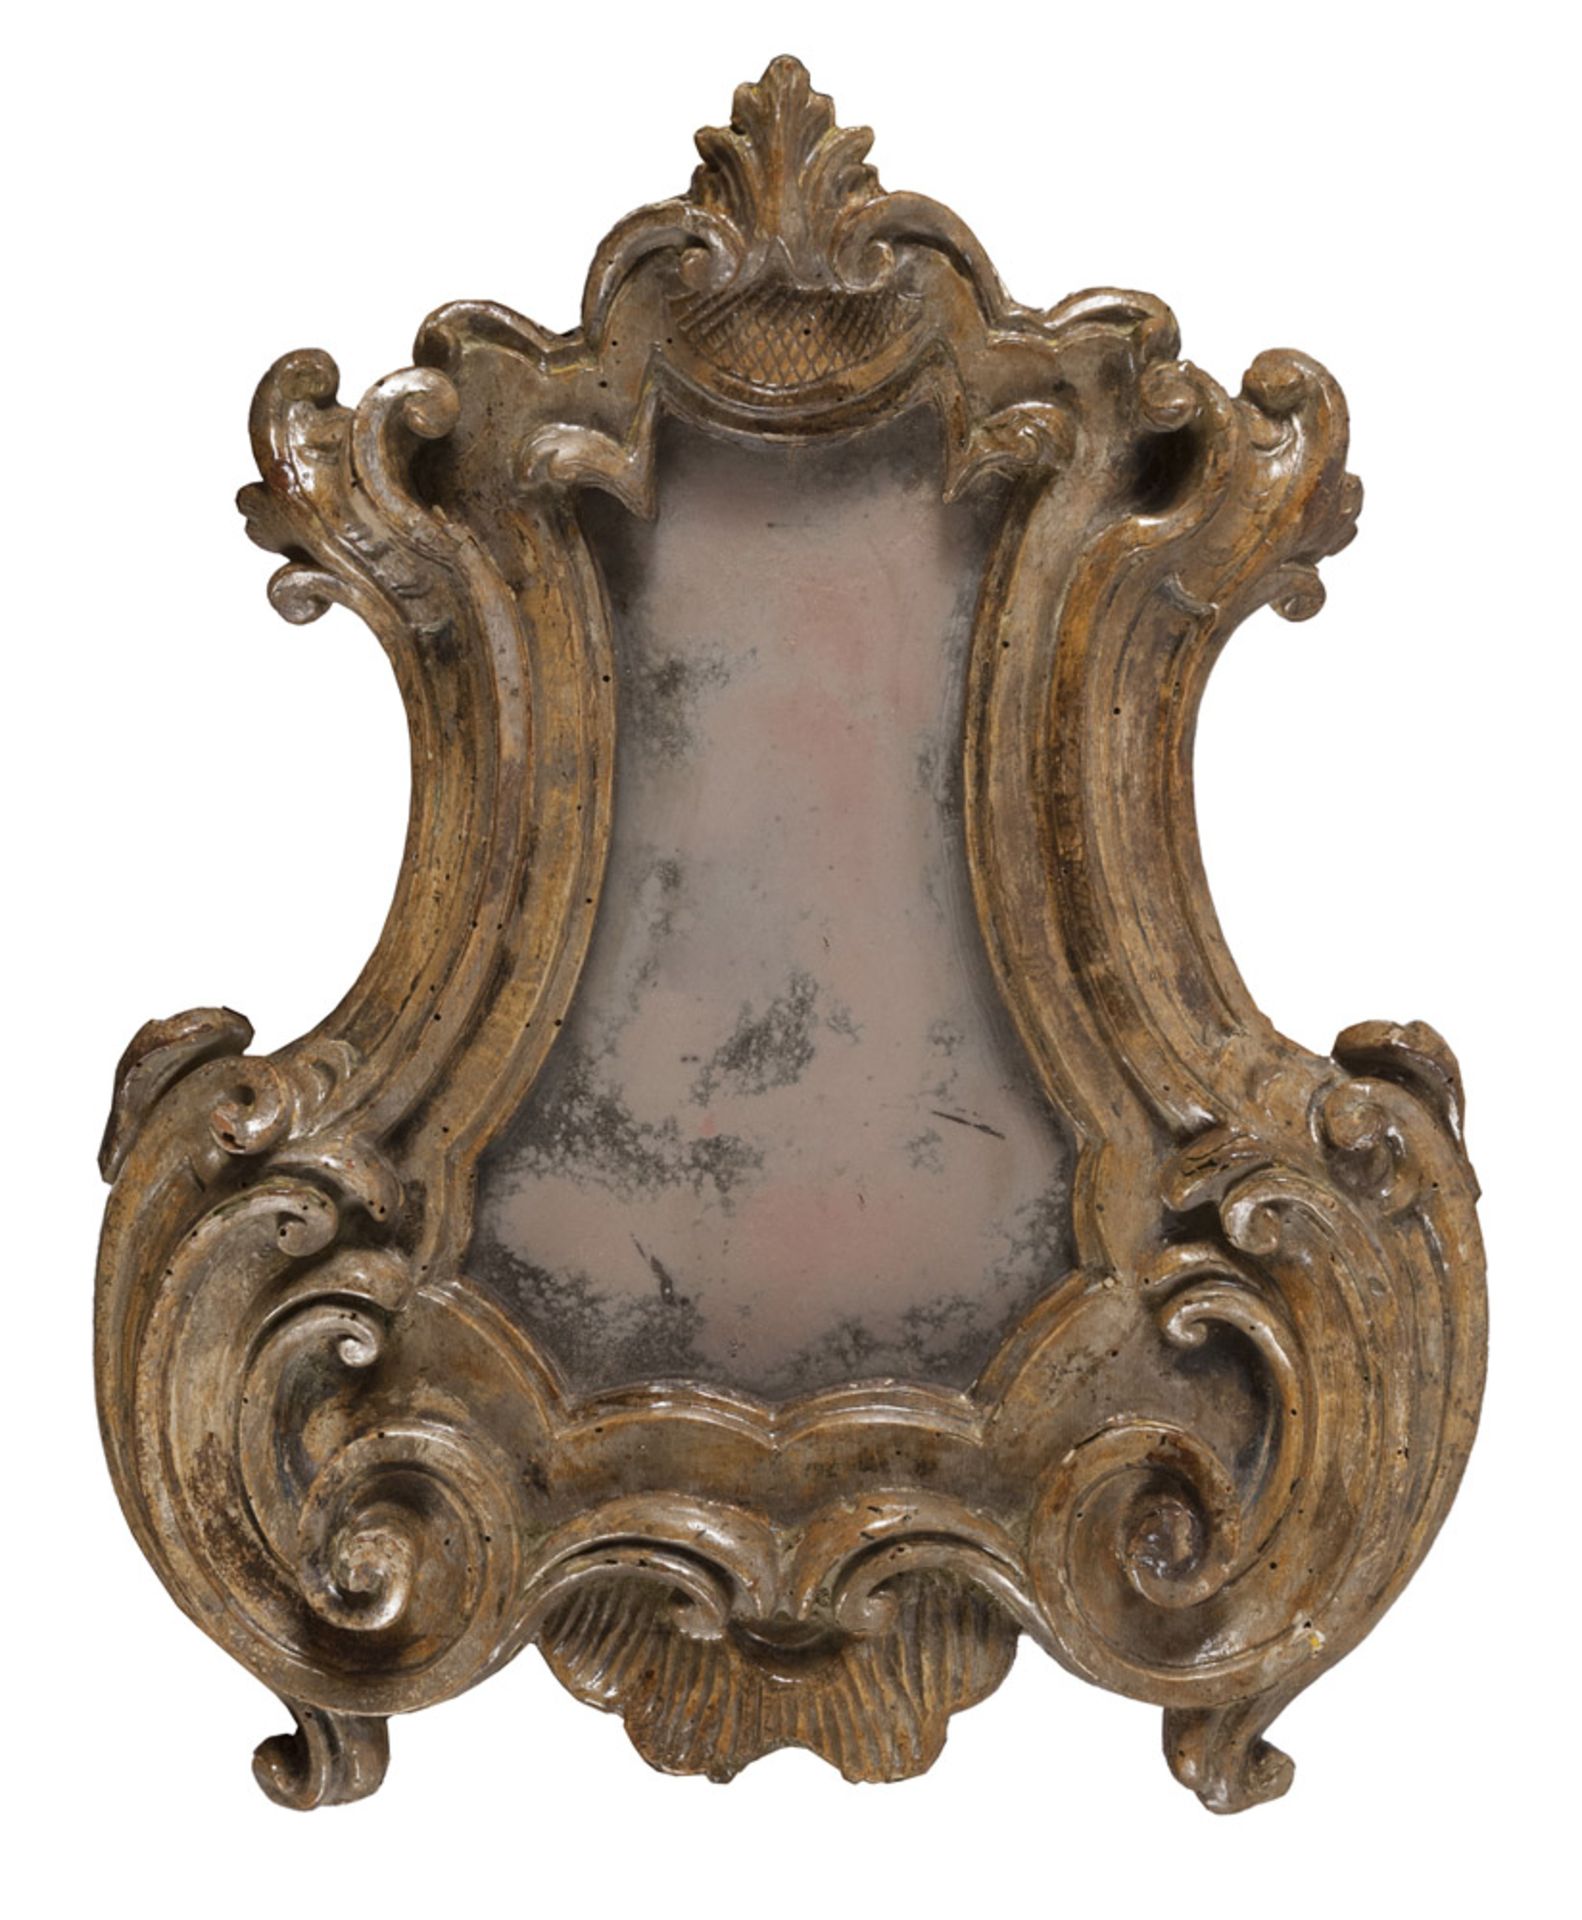 Lacquered wood mirror, Baroque period. Measures cm. 46 x 37. PICCOLA SPECCHIERA, PERIODO BAROCCO